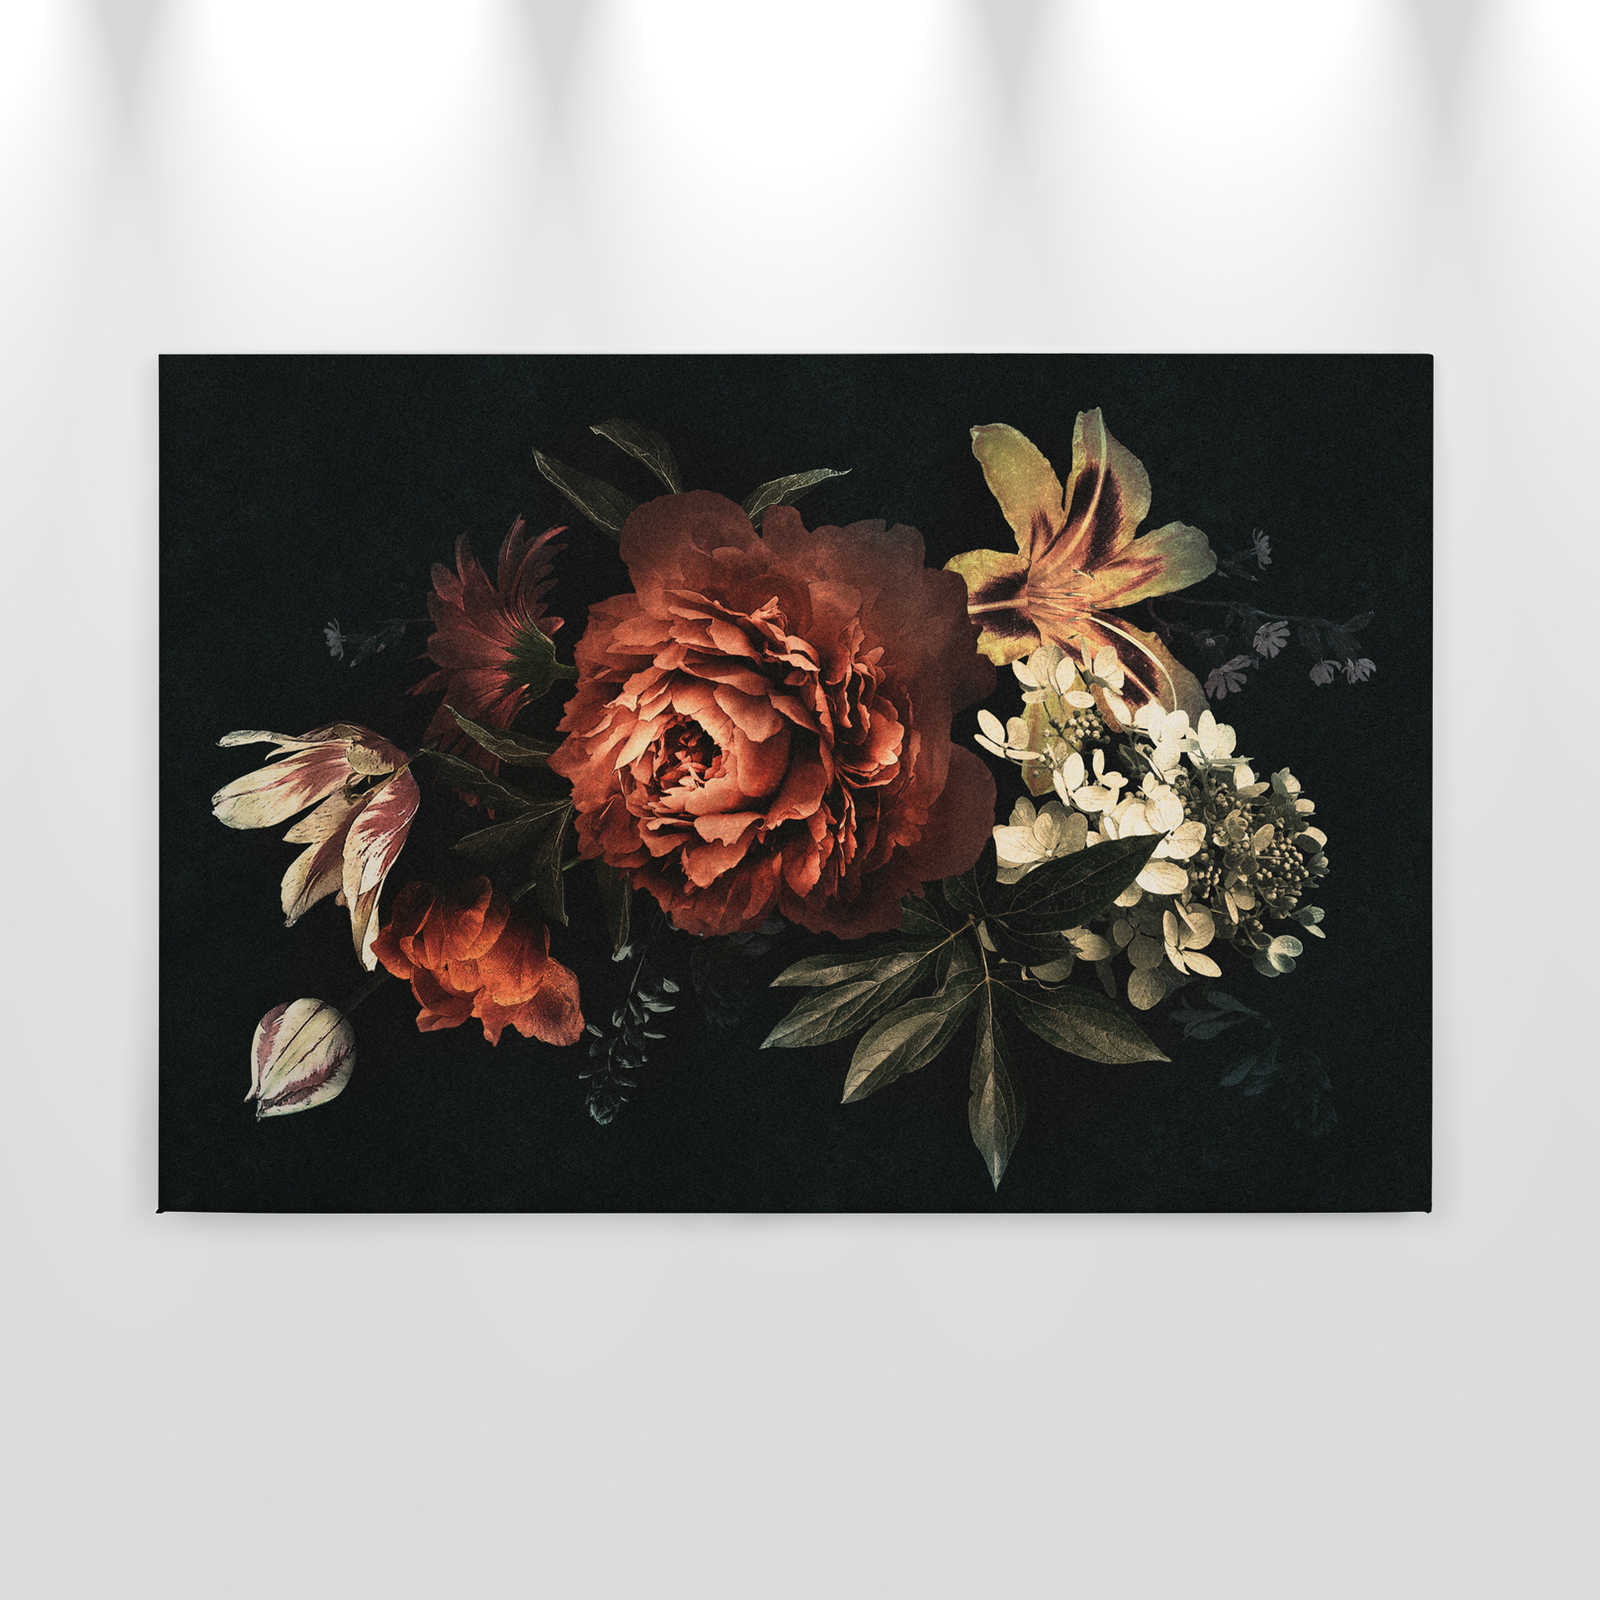             Drama queen 1 - Cuadro lienzo Bouquet con fondo oscuro en estructura de cartón - 0,90 m x 0,60 m
        